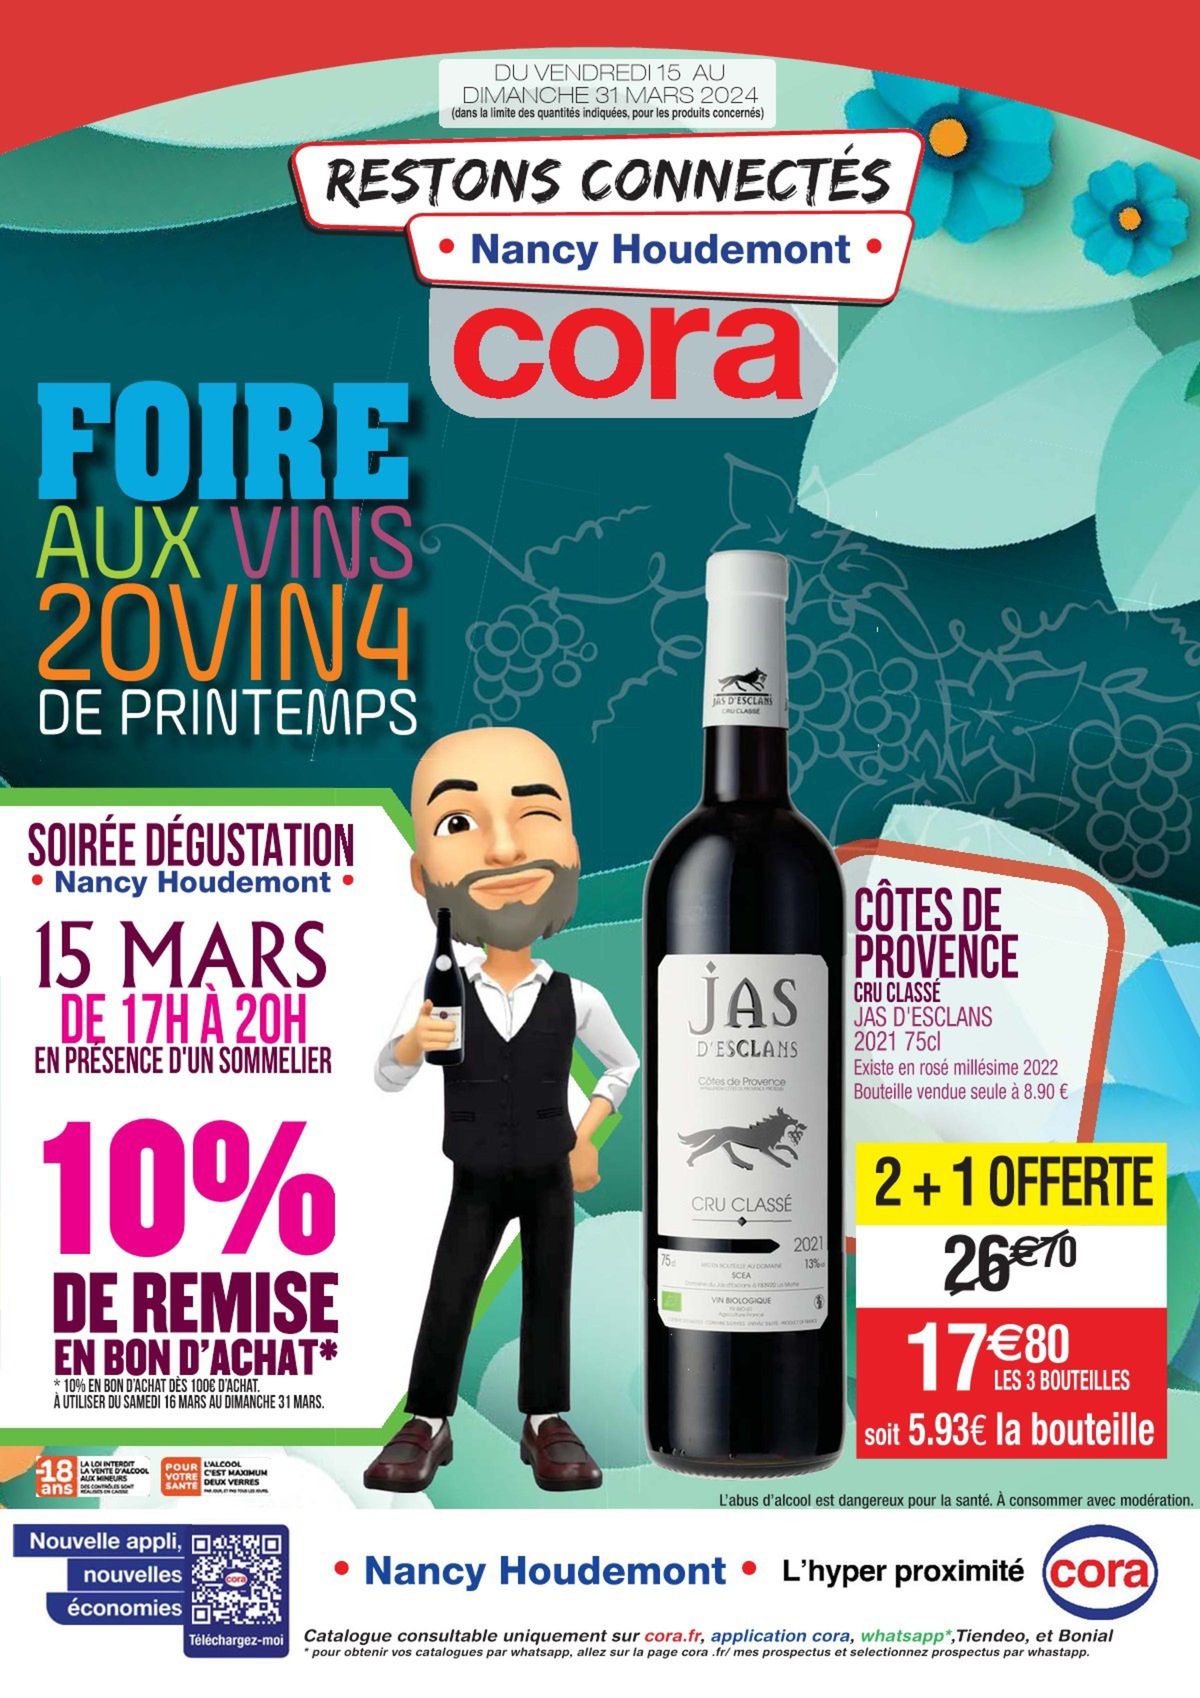 Catalogue Foire aux vins 20VIN4, page 00001